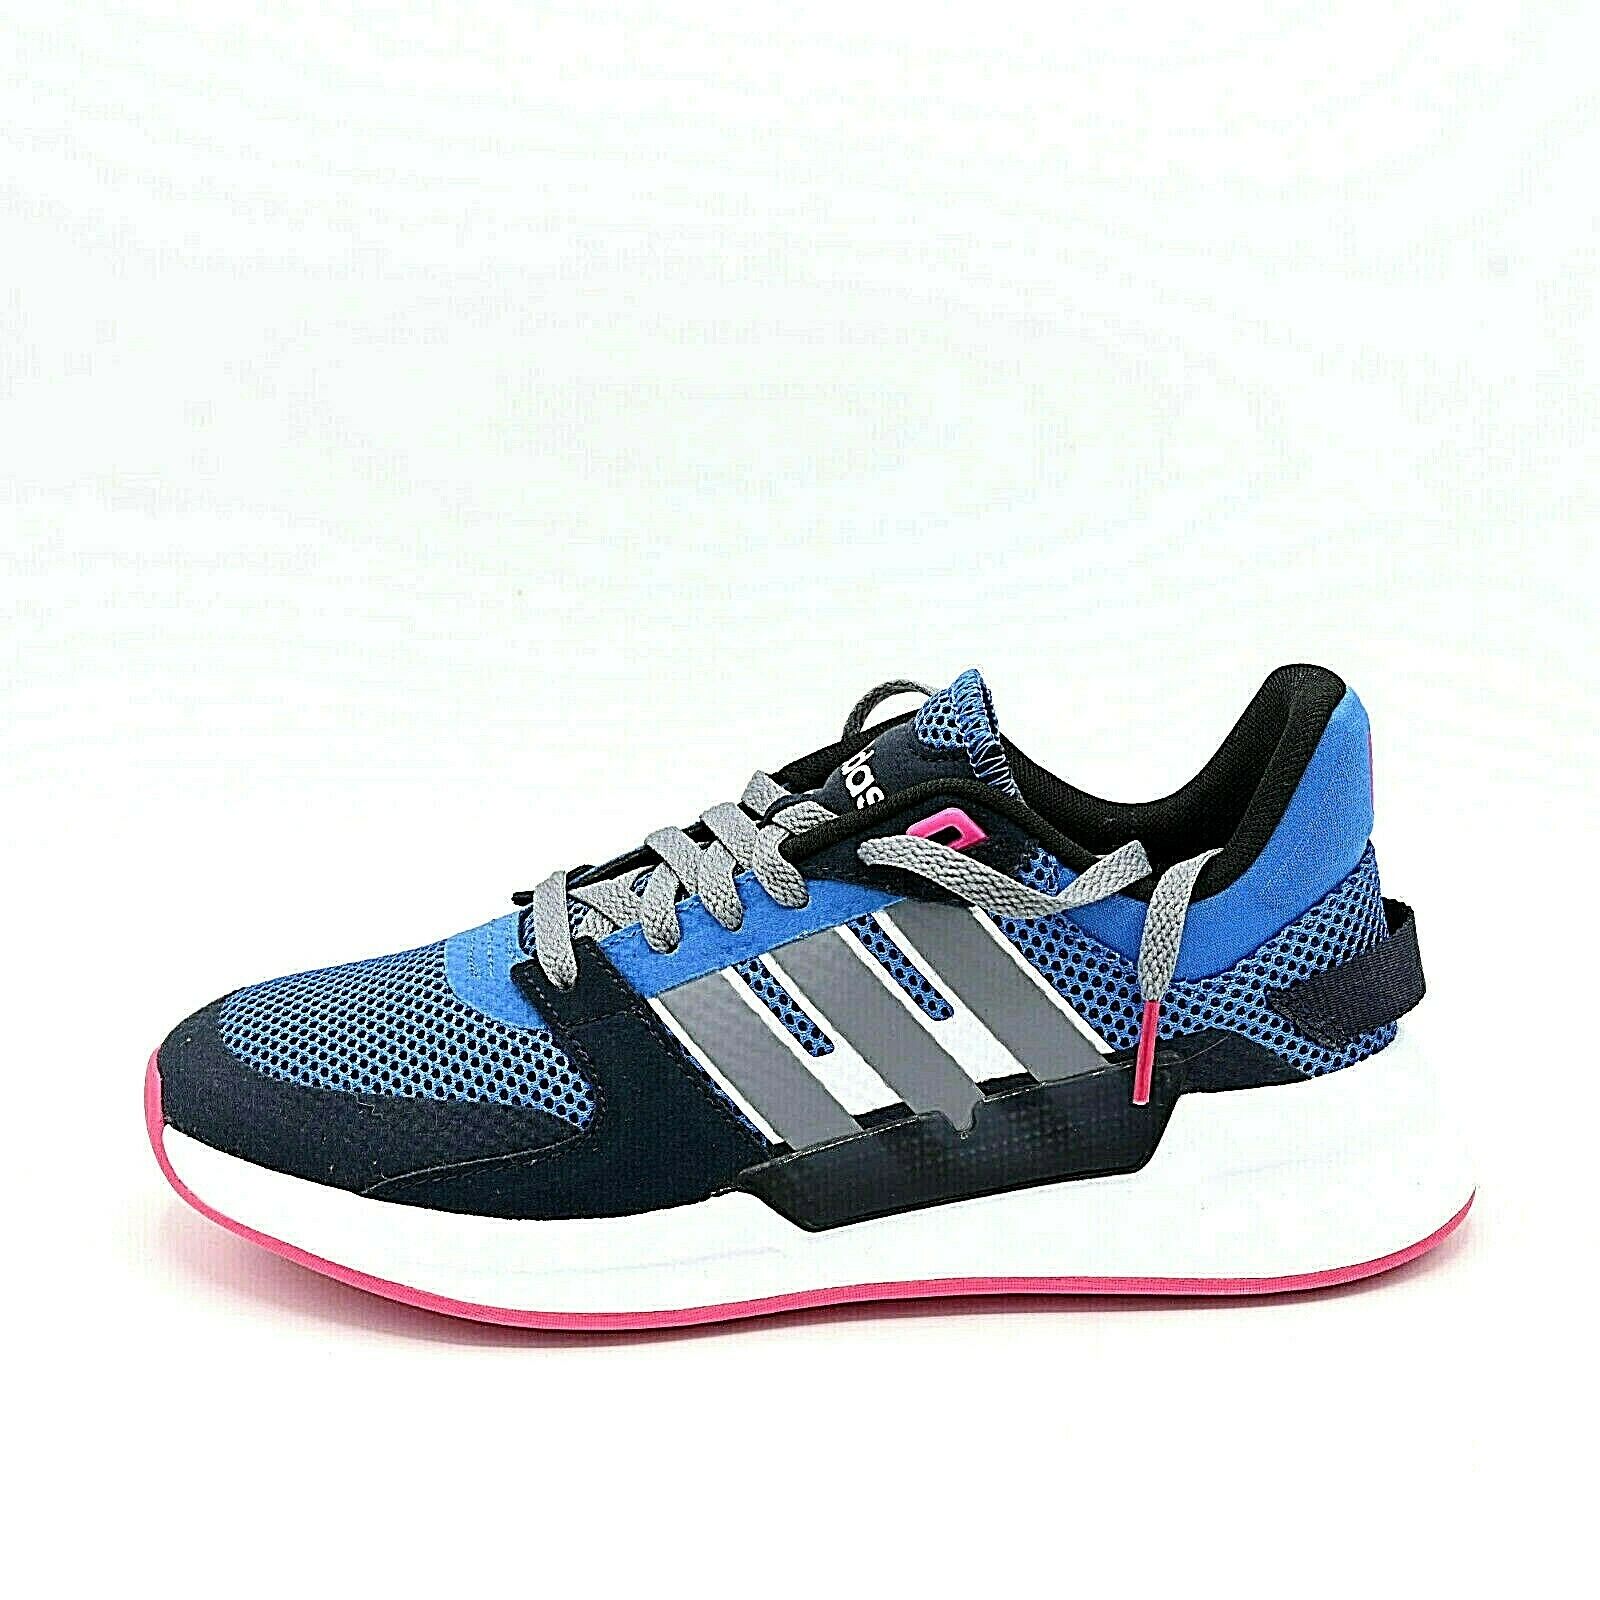 Women Adidas RUN90S Running Shoes Size 7.5 EF1558 Walking Sport Shoes